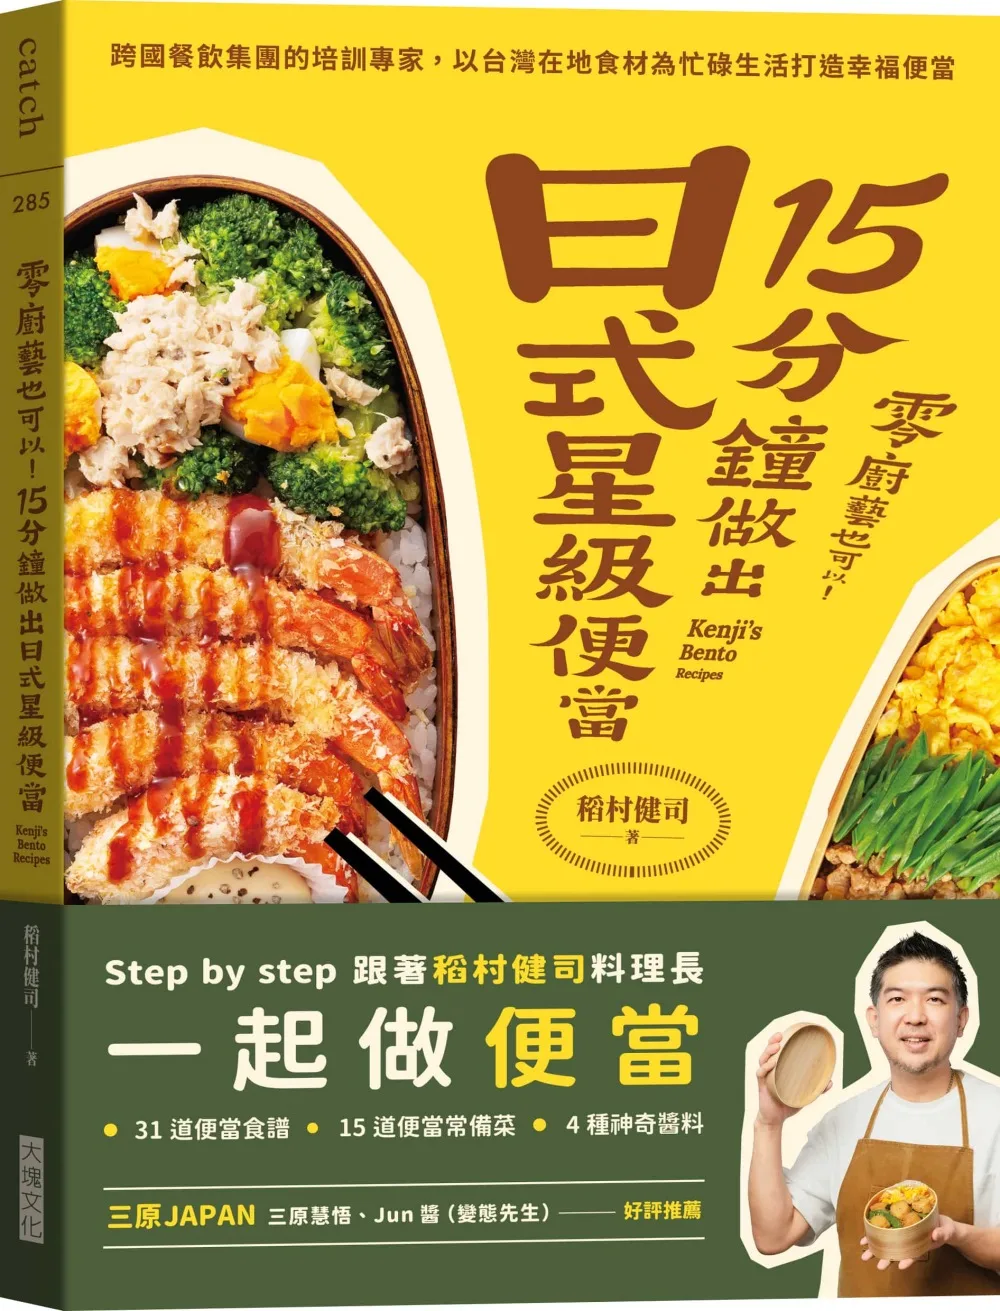 零廚藝也可以！15分鐘做出日式星級便當：跨國餐飲集團的培訓專家，以台灣在地食材為忙碌生活打造幸福便當